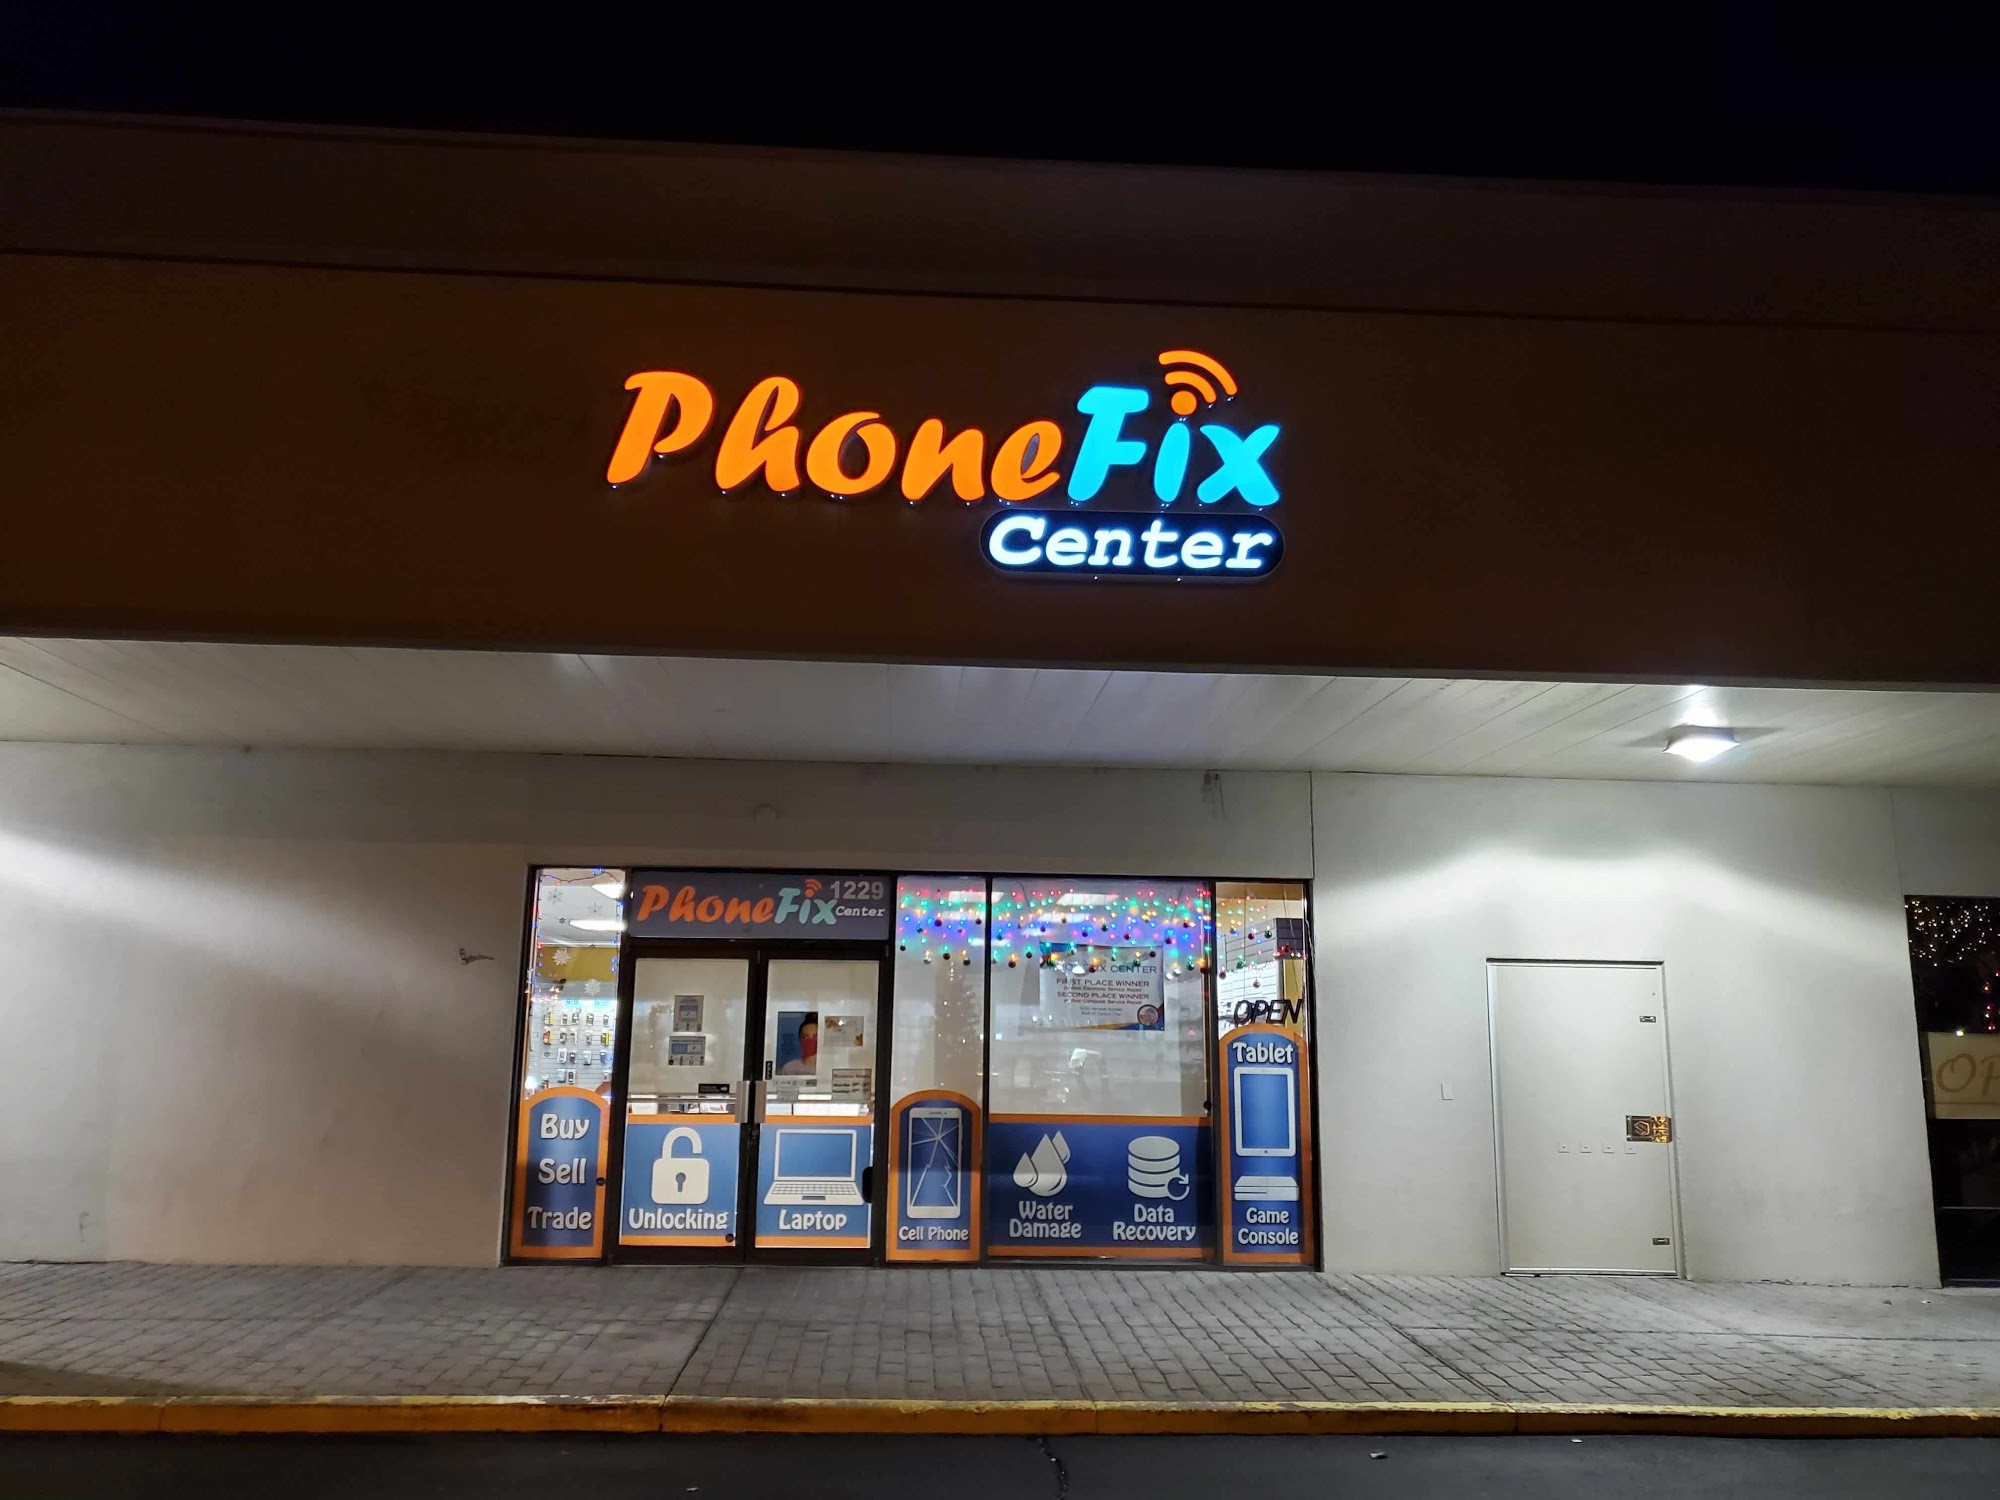 PhoneFix Center